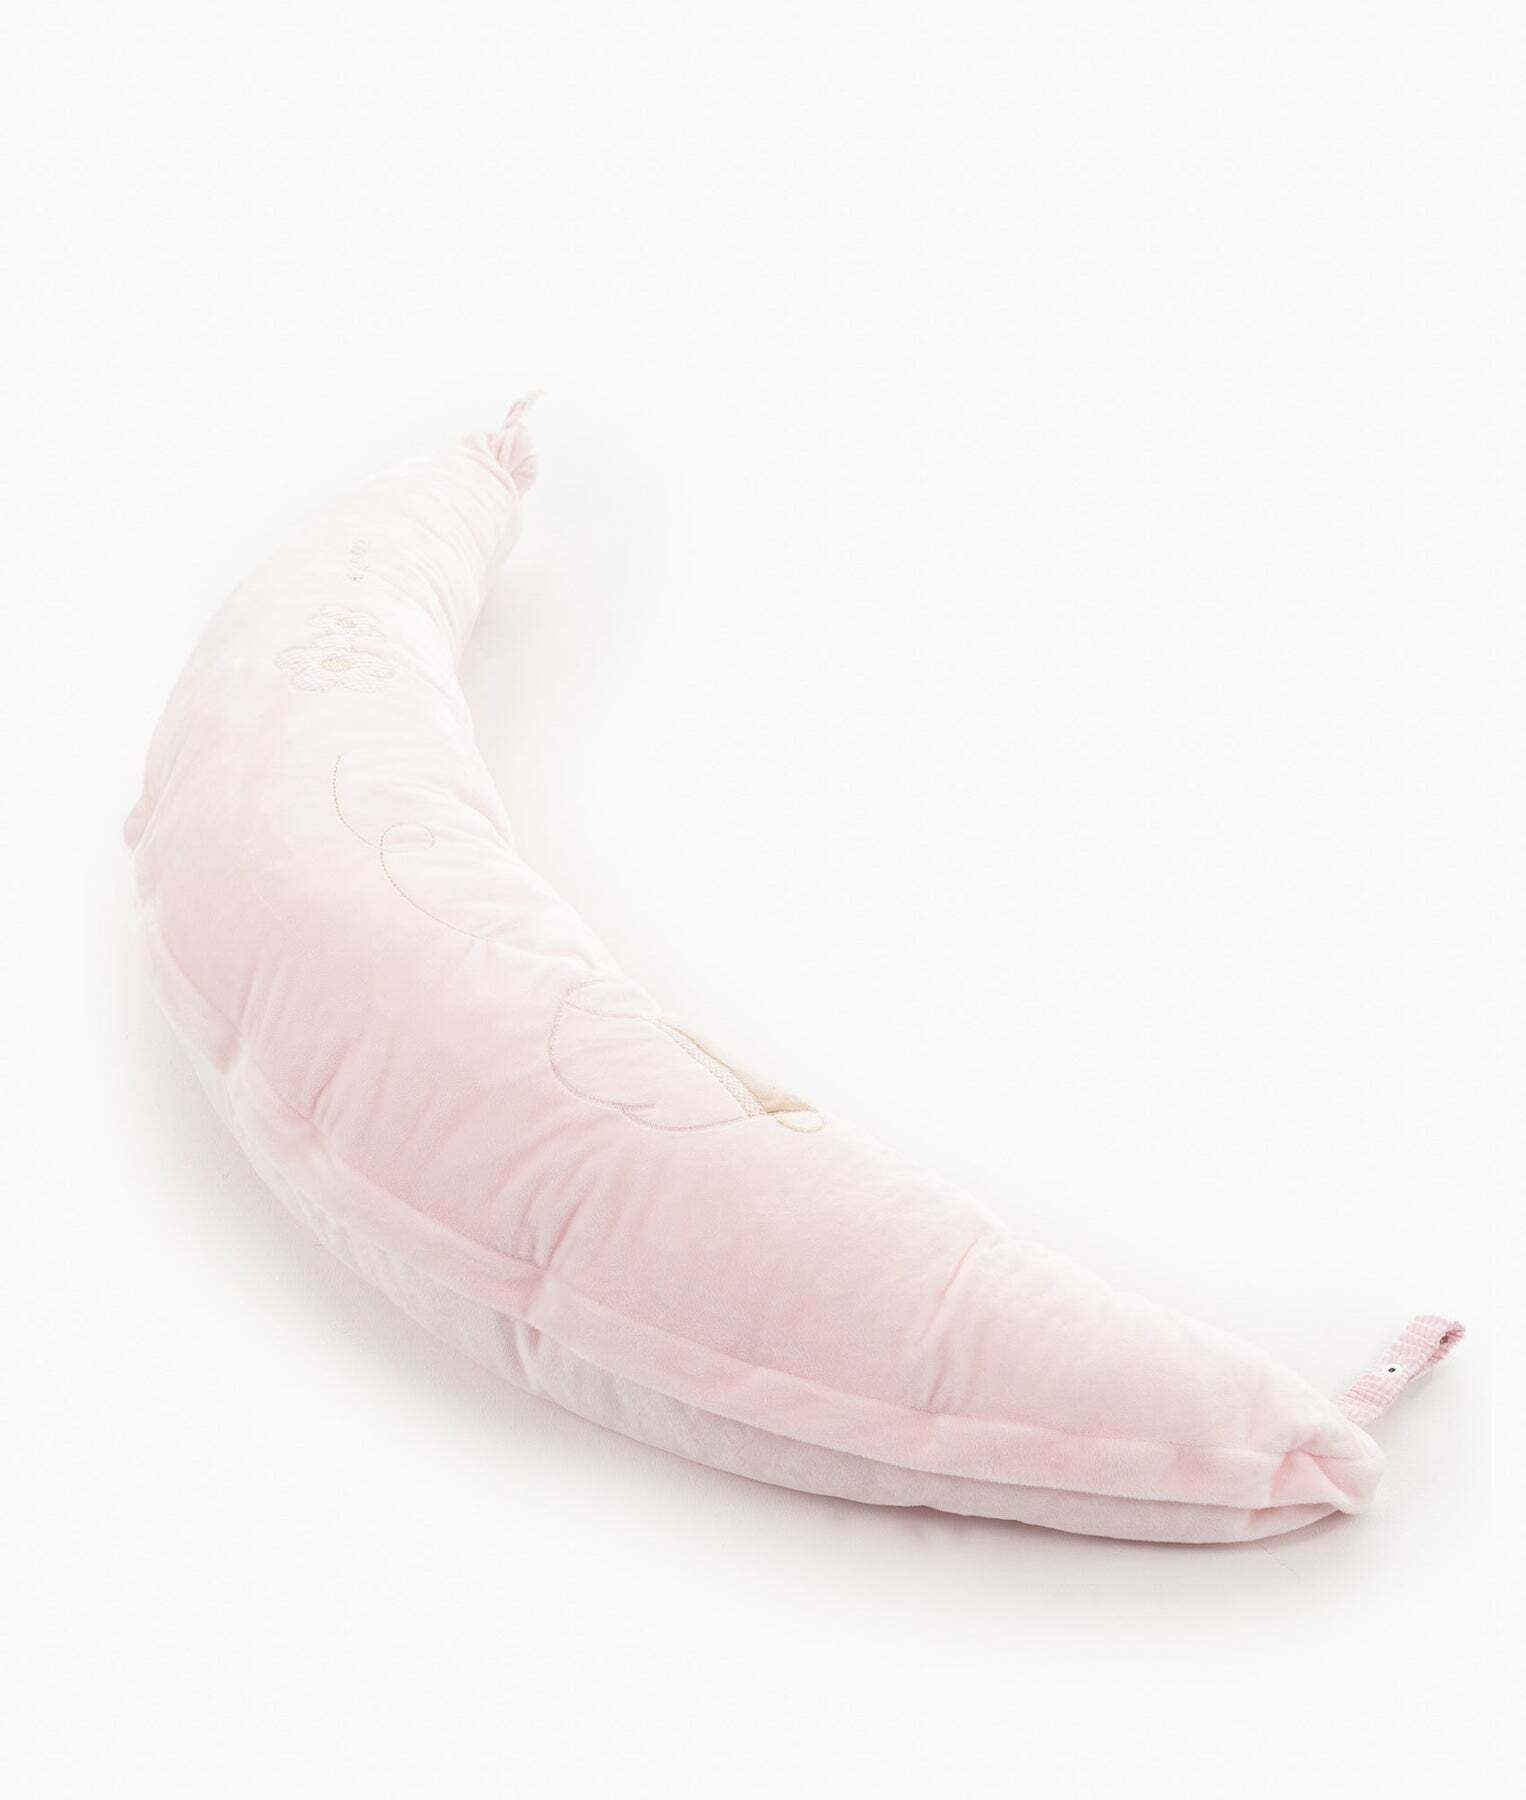 nursing-lounge-pillow-pink-824_1800x1800